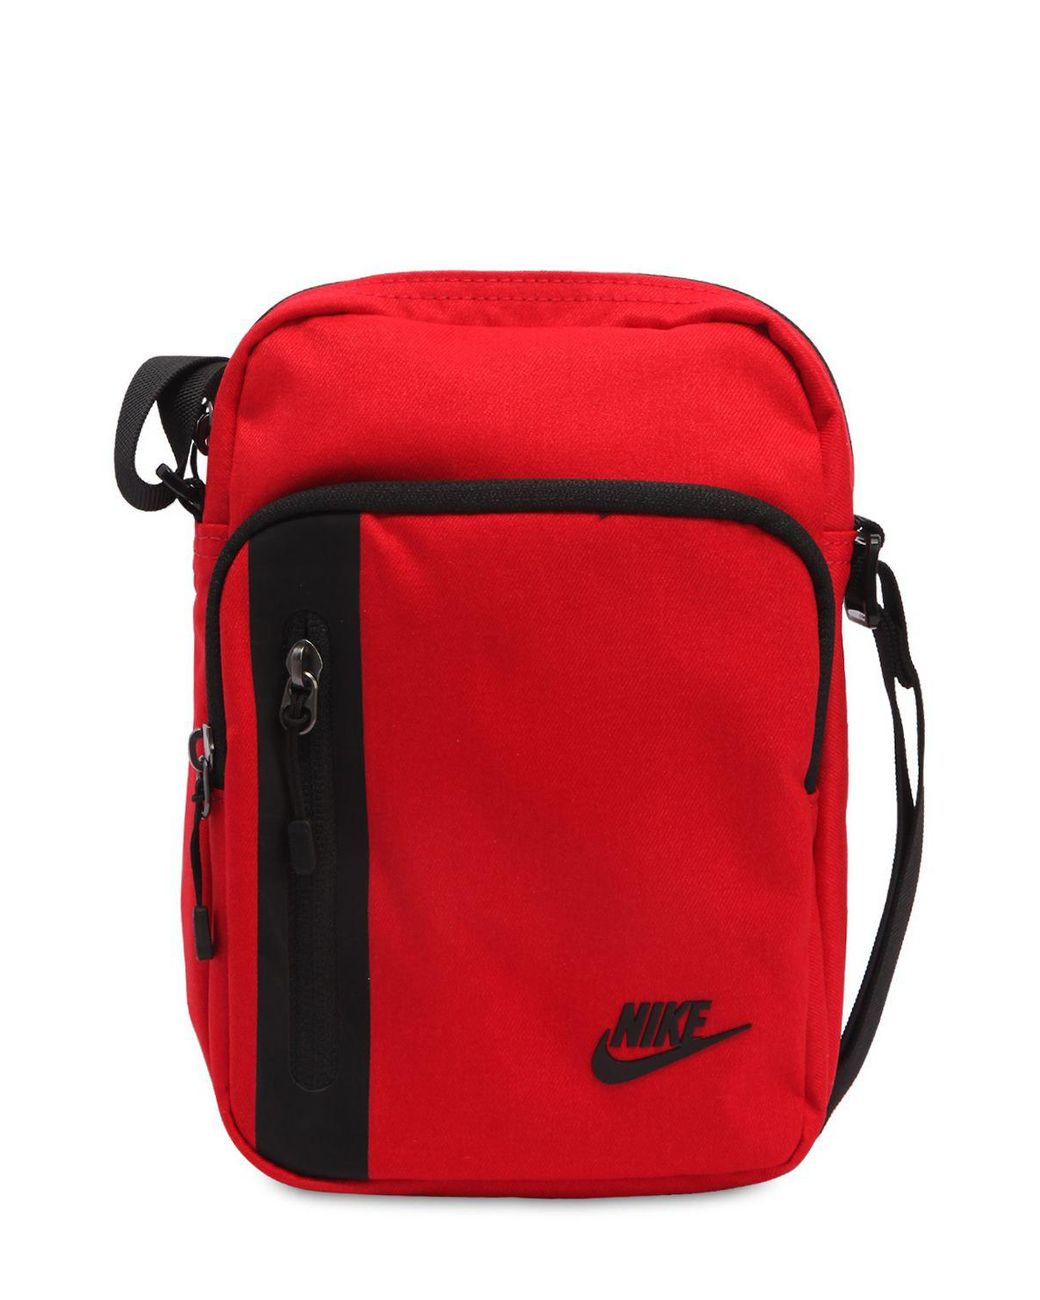 Nike Nike Side Bag price from jumia in Nigeria  Yaoota